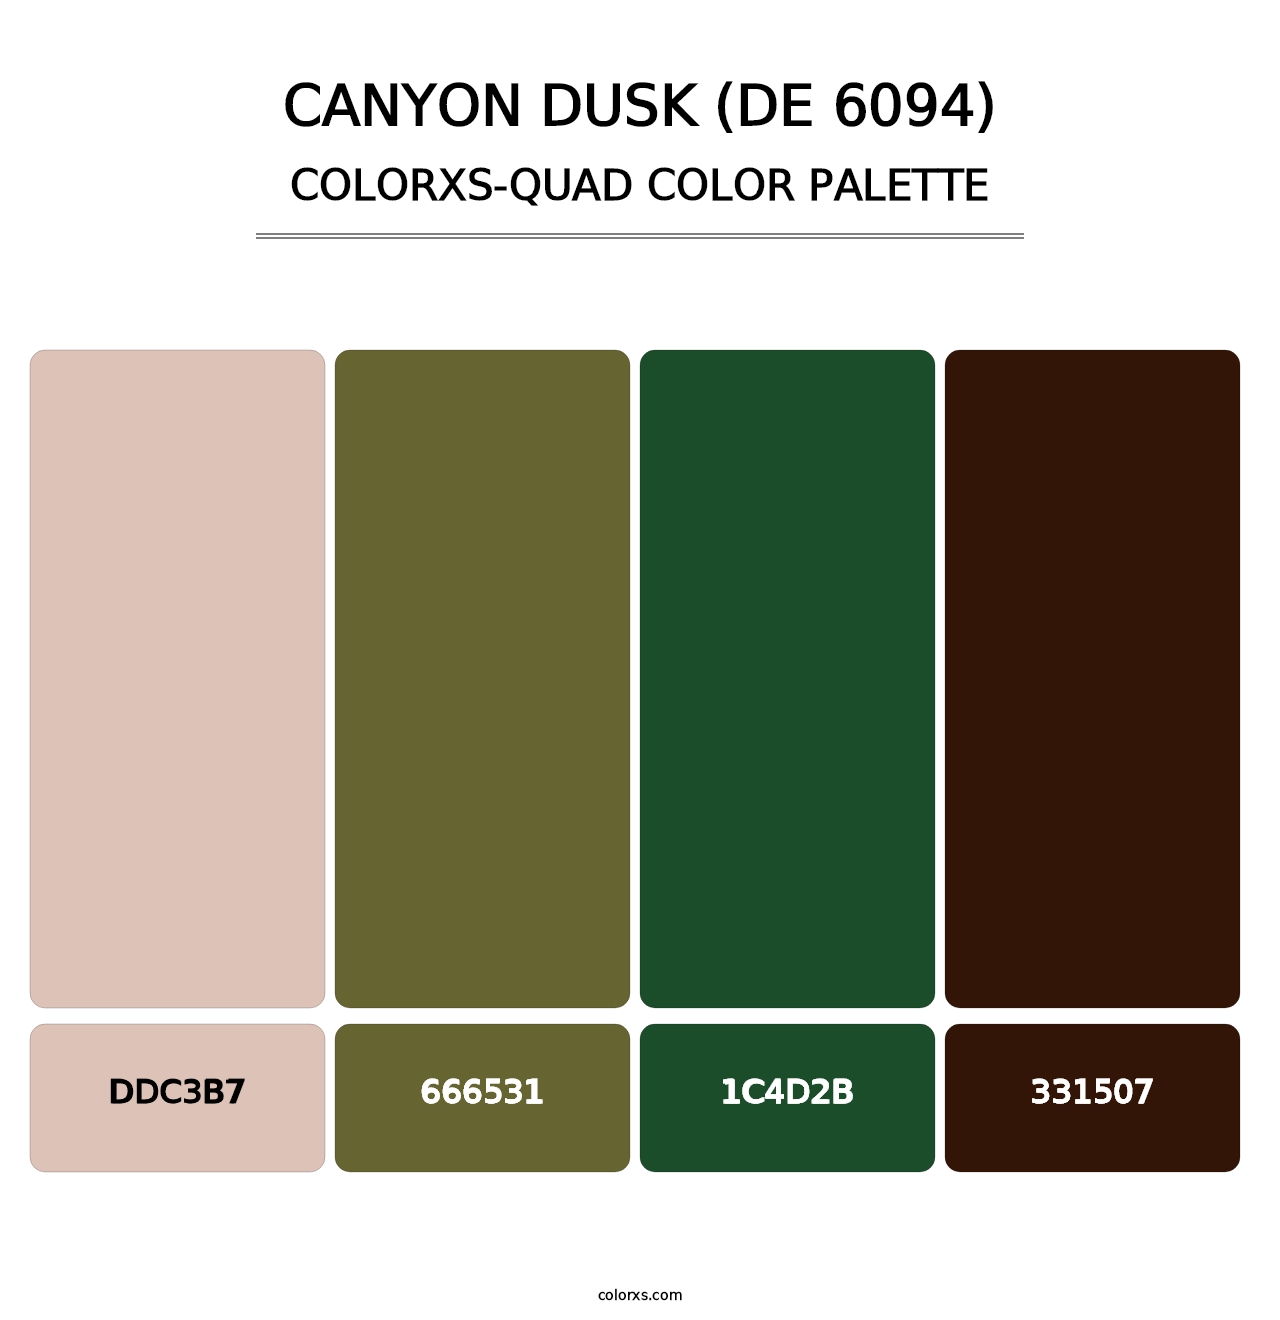 Canyon Dusk (DE 6094) - Colorxs Quad Palette